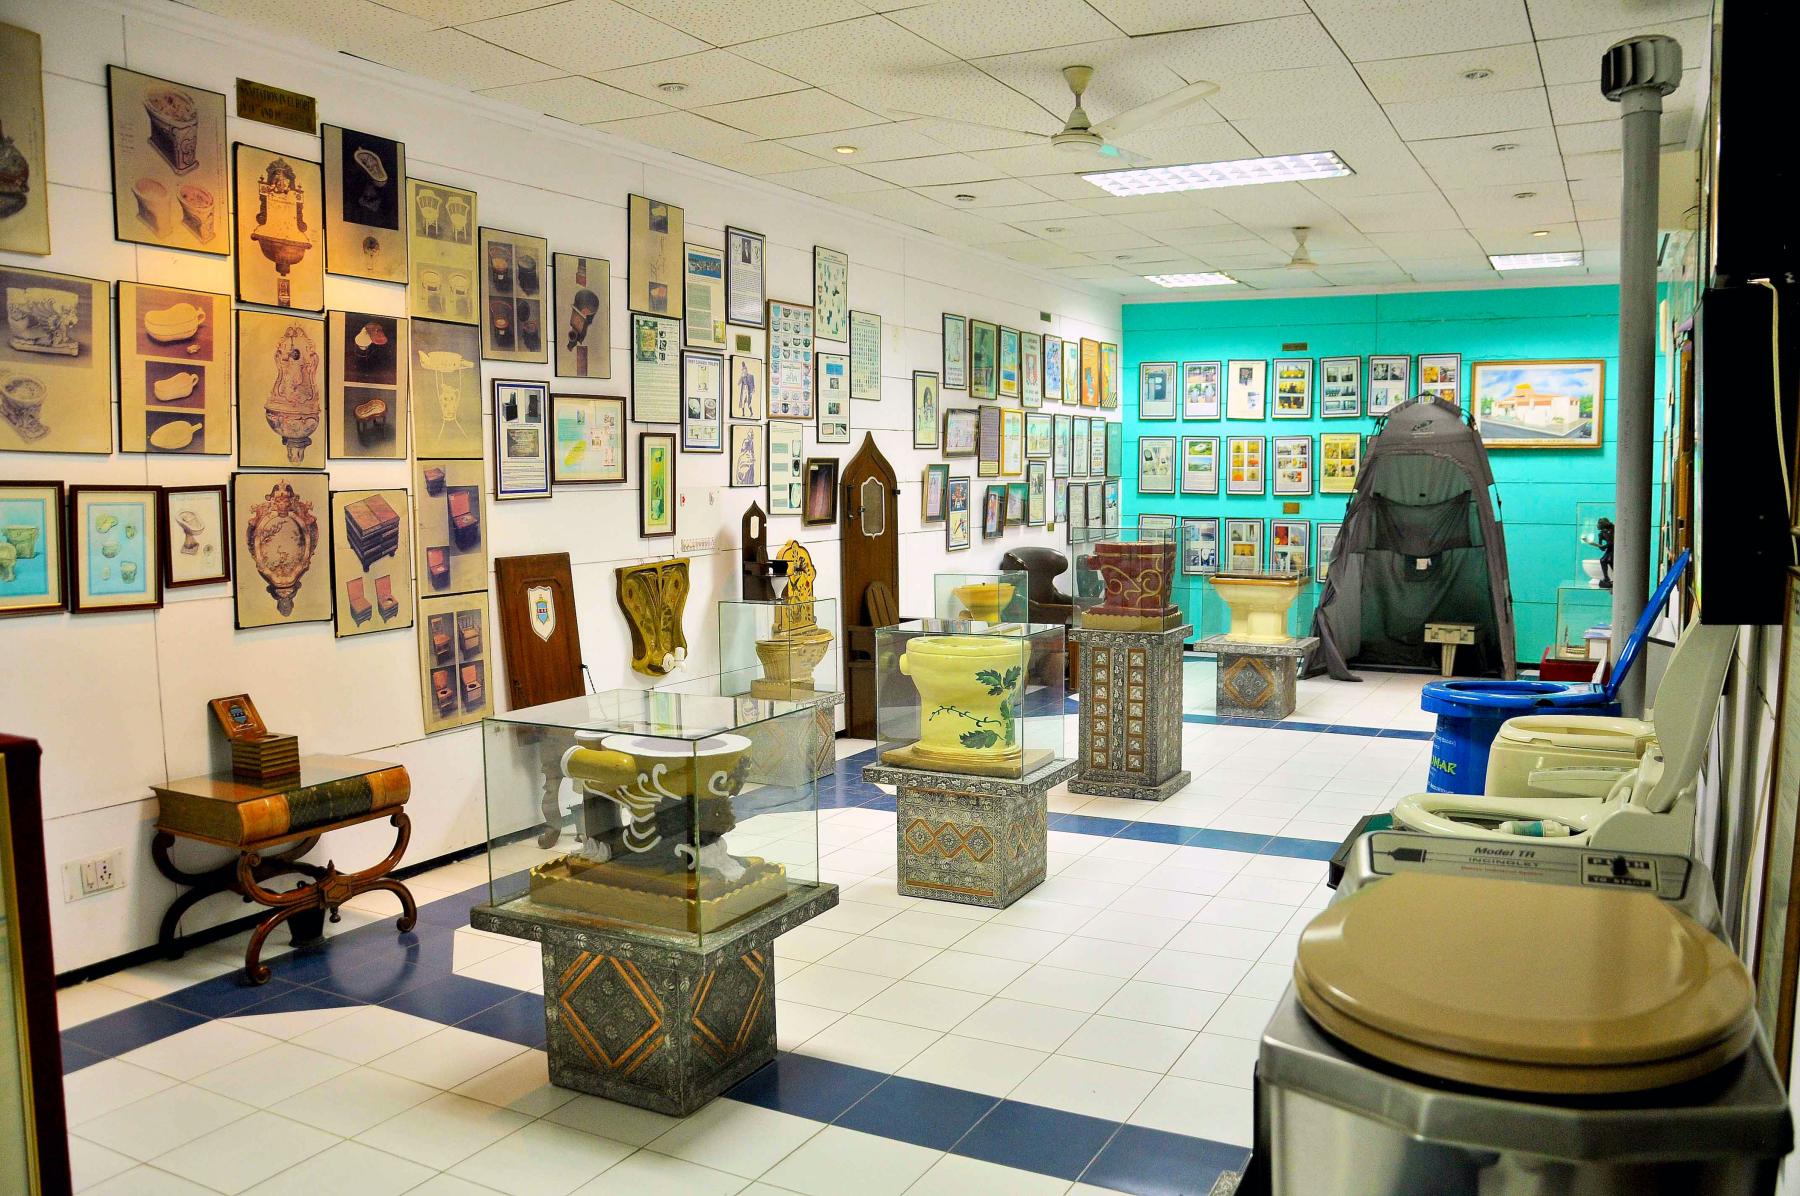 Visiting Delhi’s Toilet Museum